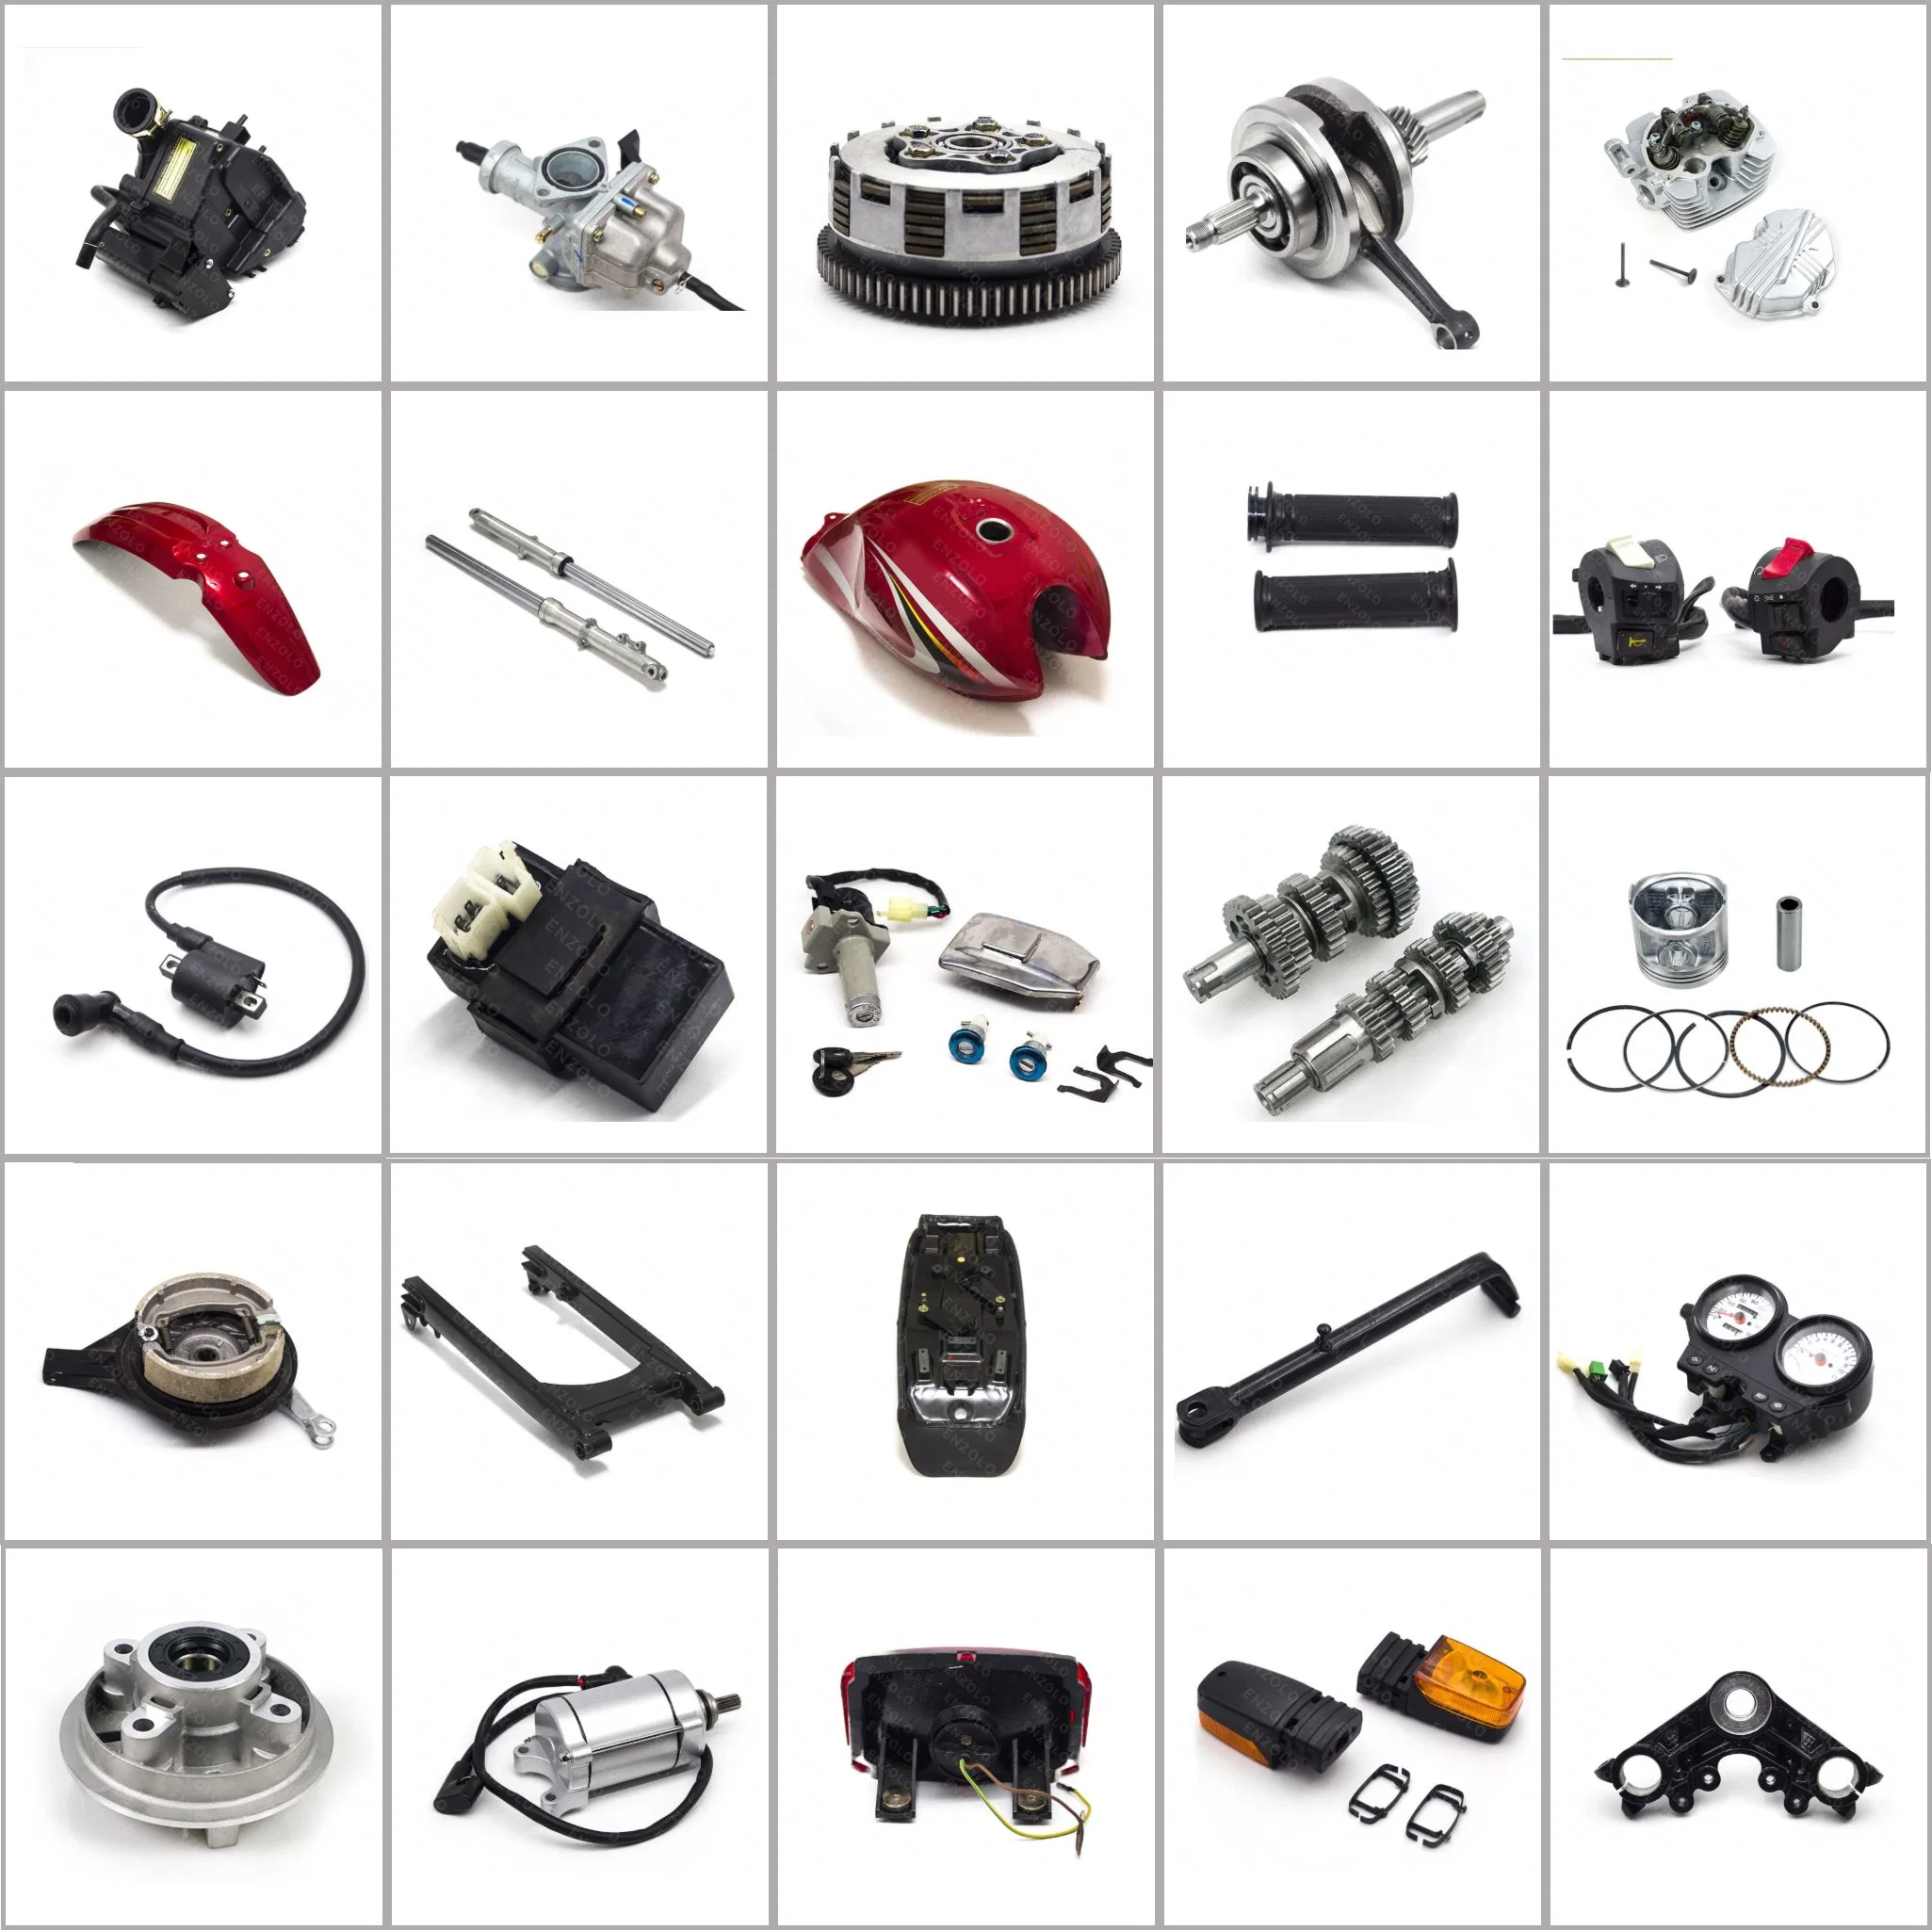 Piezas de motocicleta de frenos/componentes eléctricos/Motor y transmisión/cuerpo/manipulación y suspensión/piezas de iluminación para Honda/YAMAHA/Suzuki/TVS/Zongshen/Haojue/Dayun